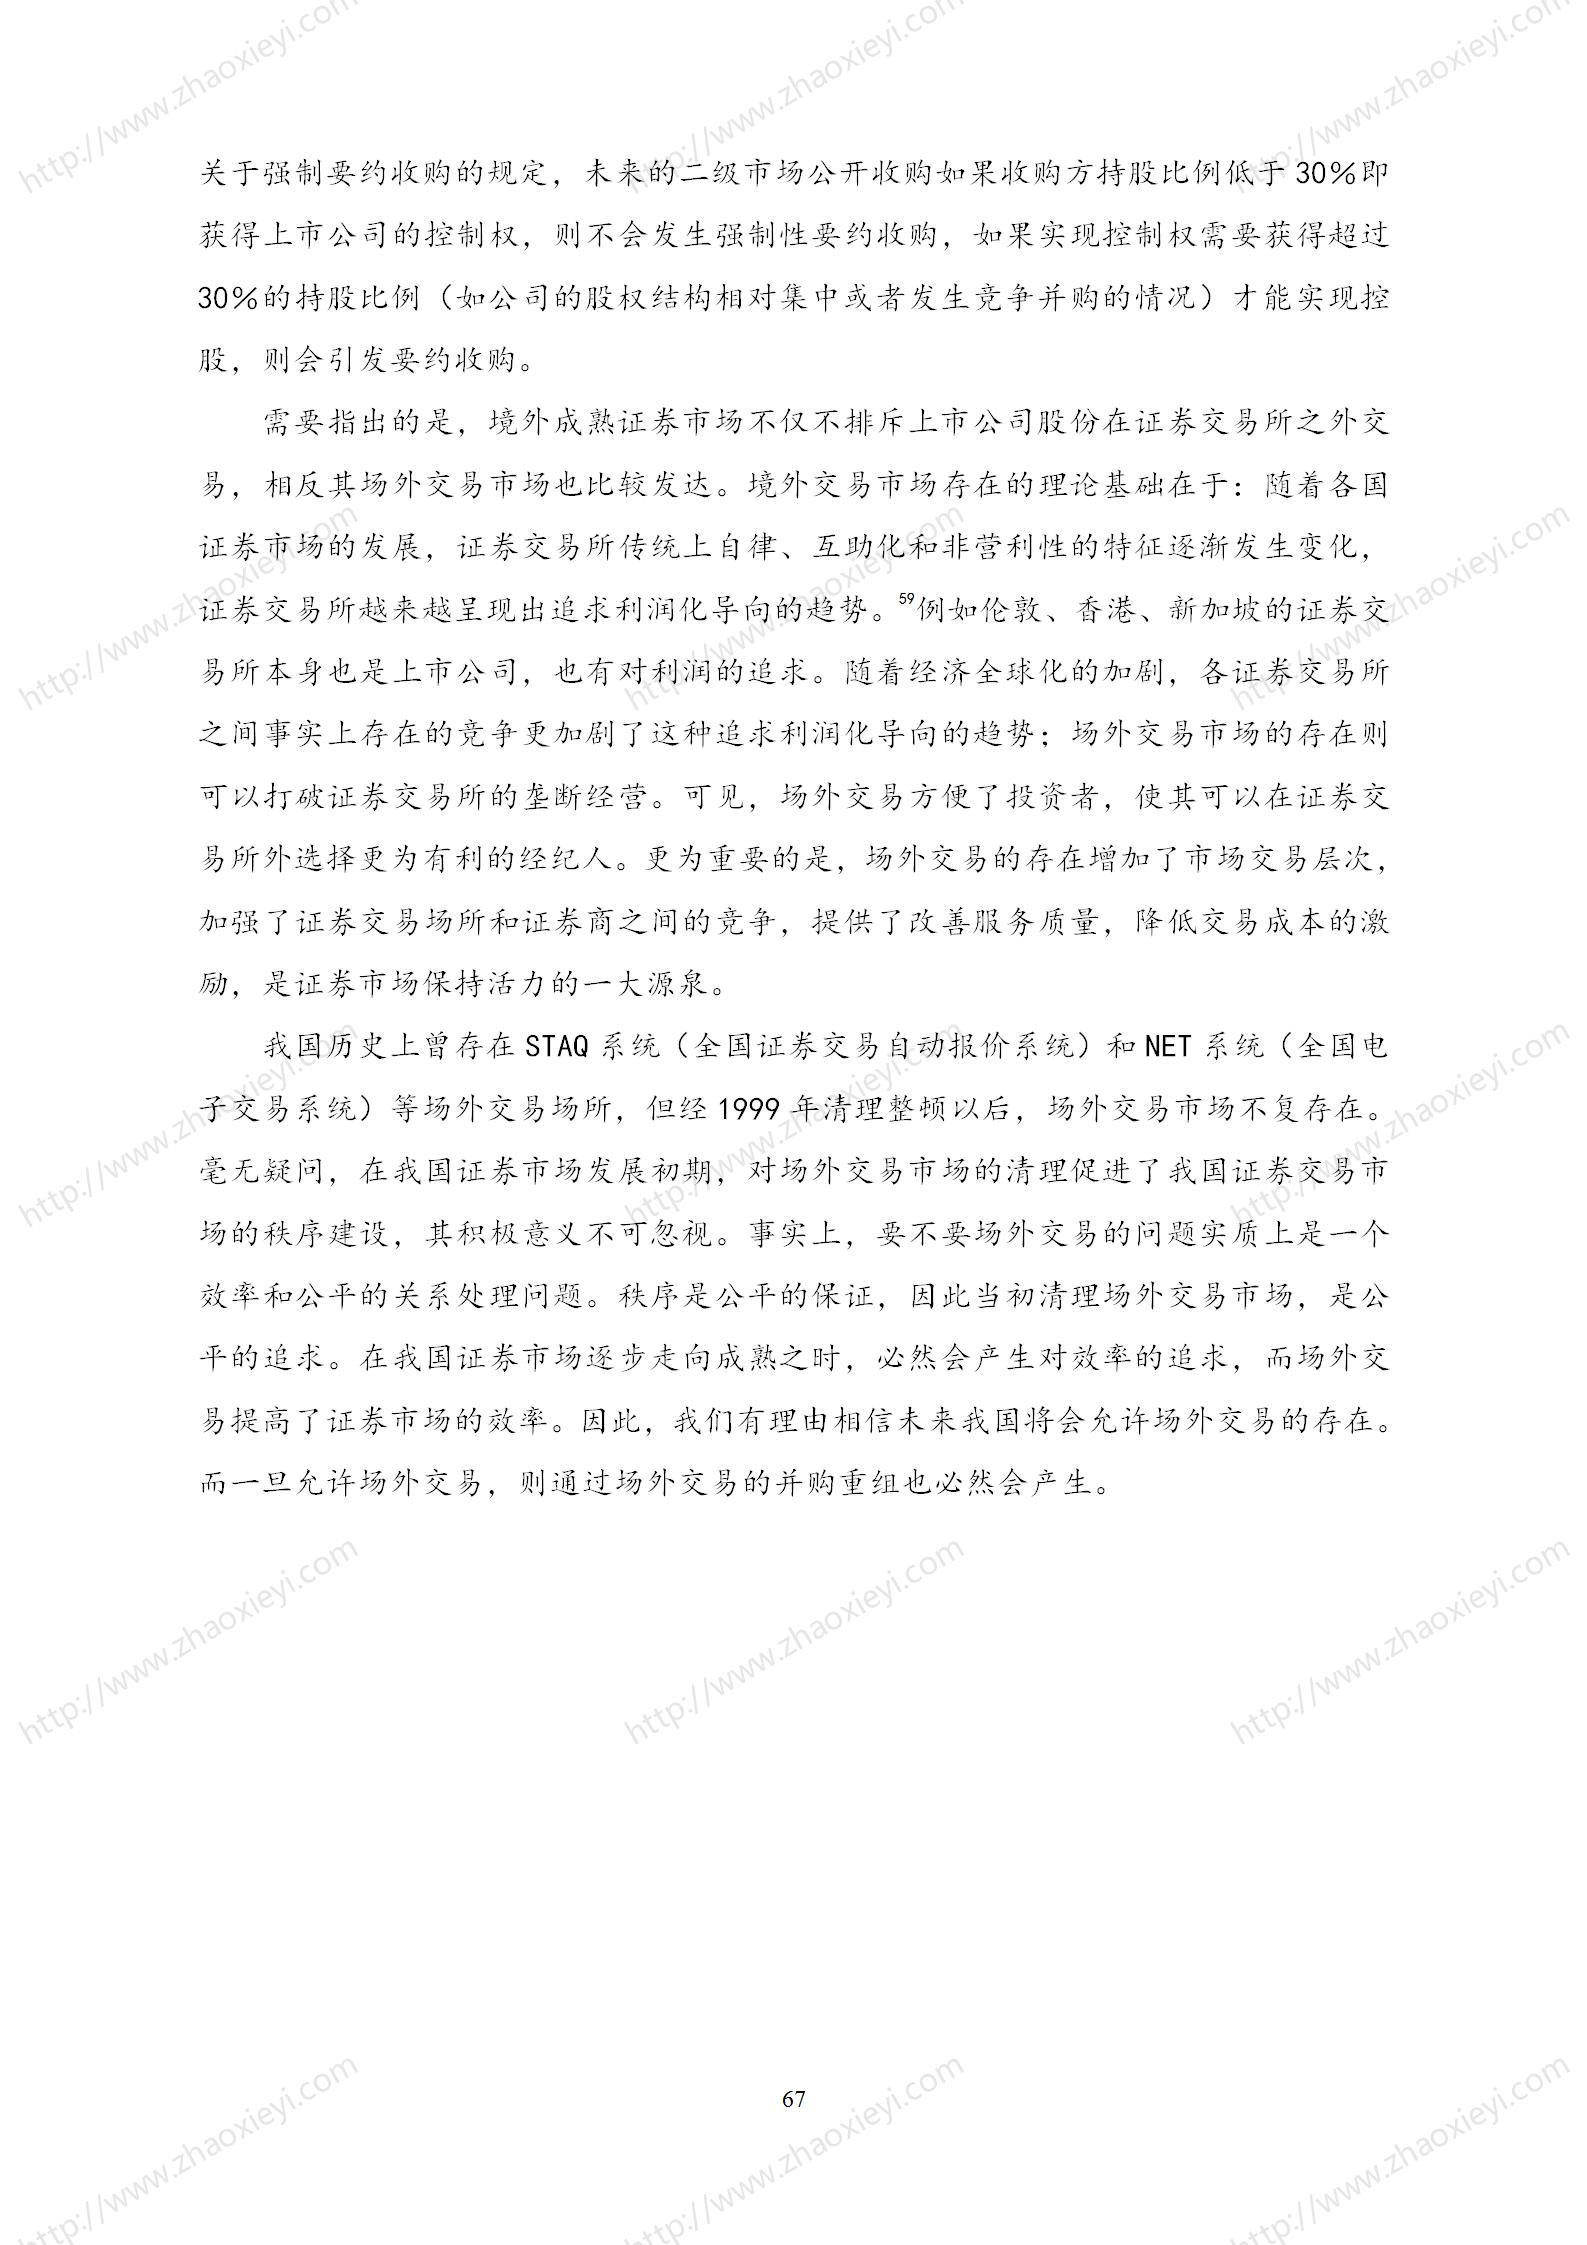 中国上市公司并购重组的模式研究_38.jpg